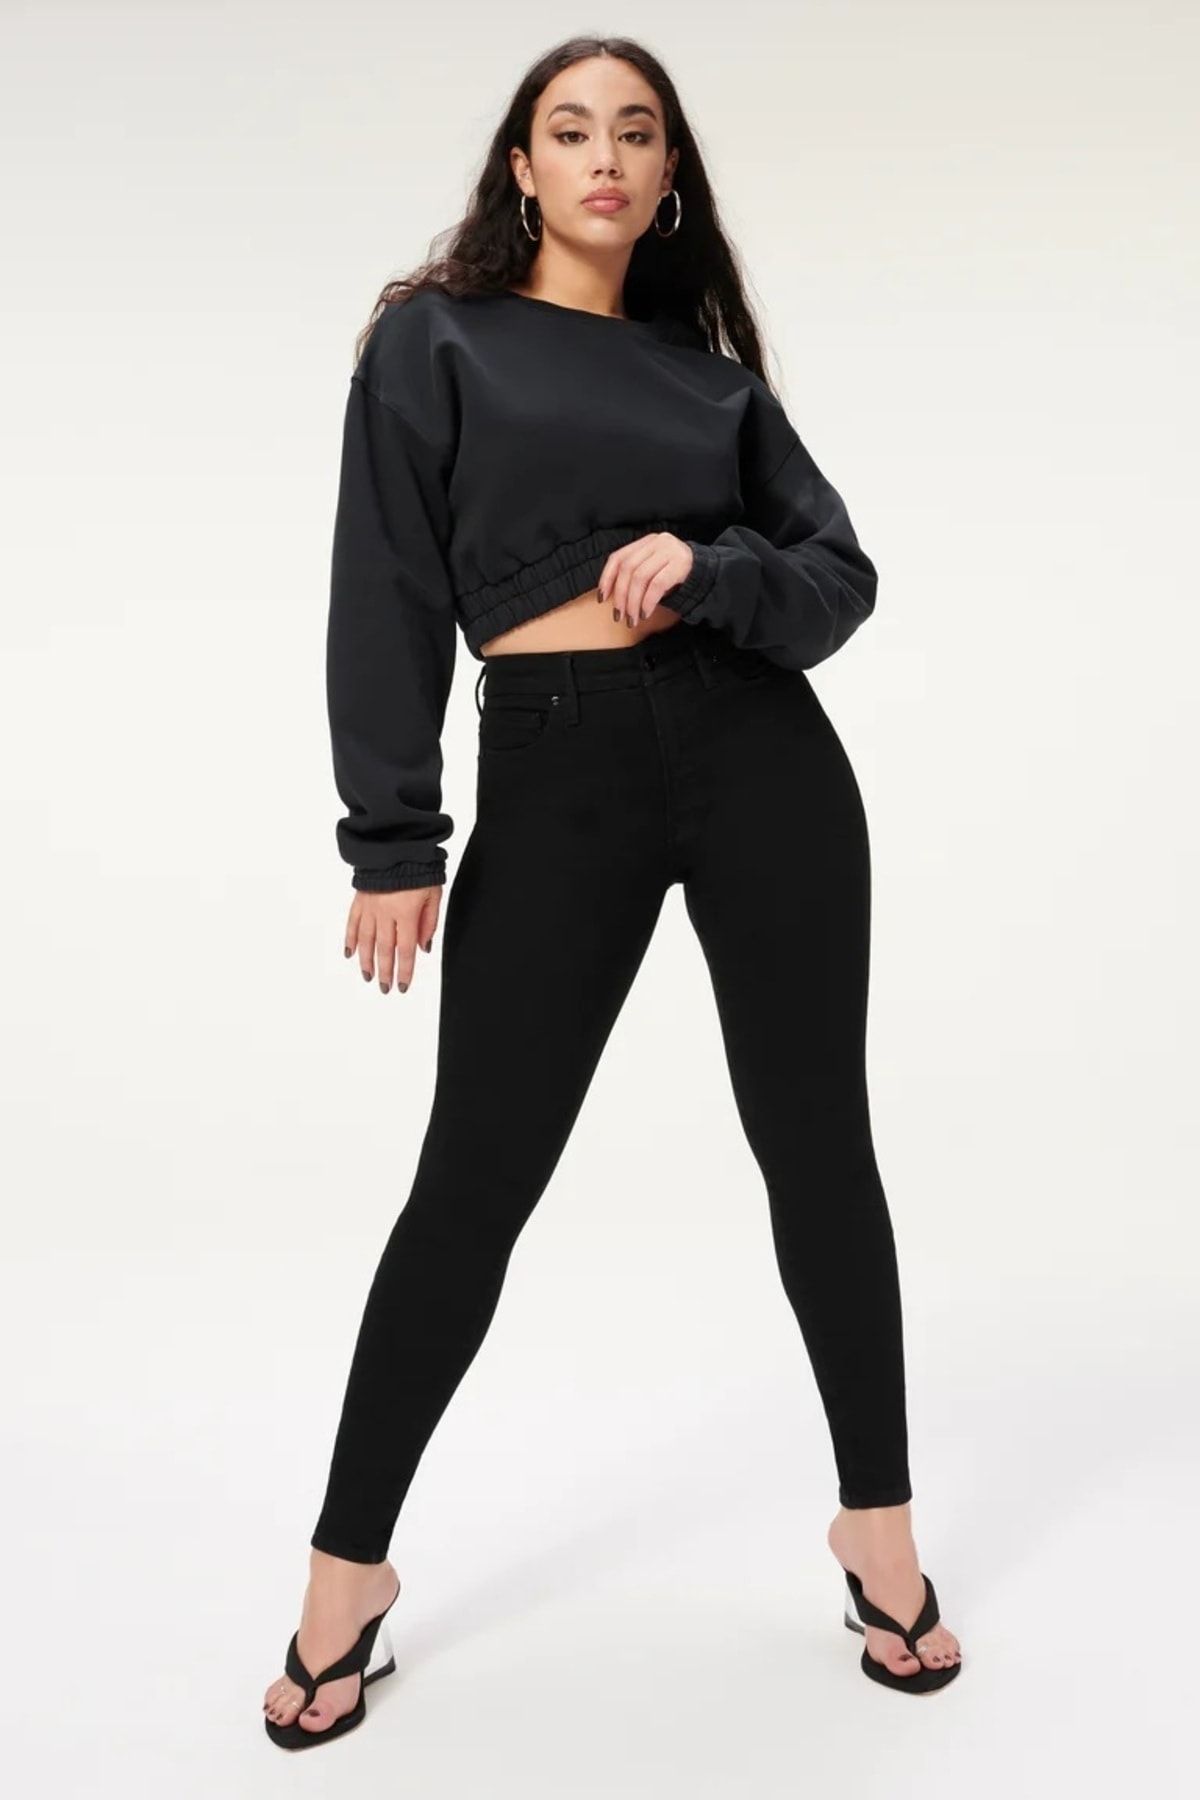 BROSERER Sakura Kadın Siyah Yüksek Bel Dar Paça Jeans Kot Solmaz Toparlayıcı Pantolon